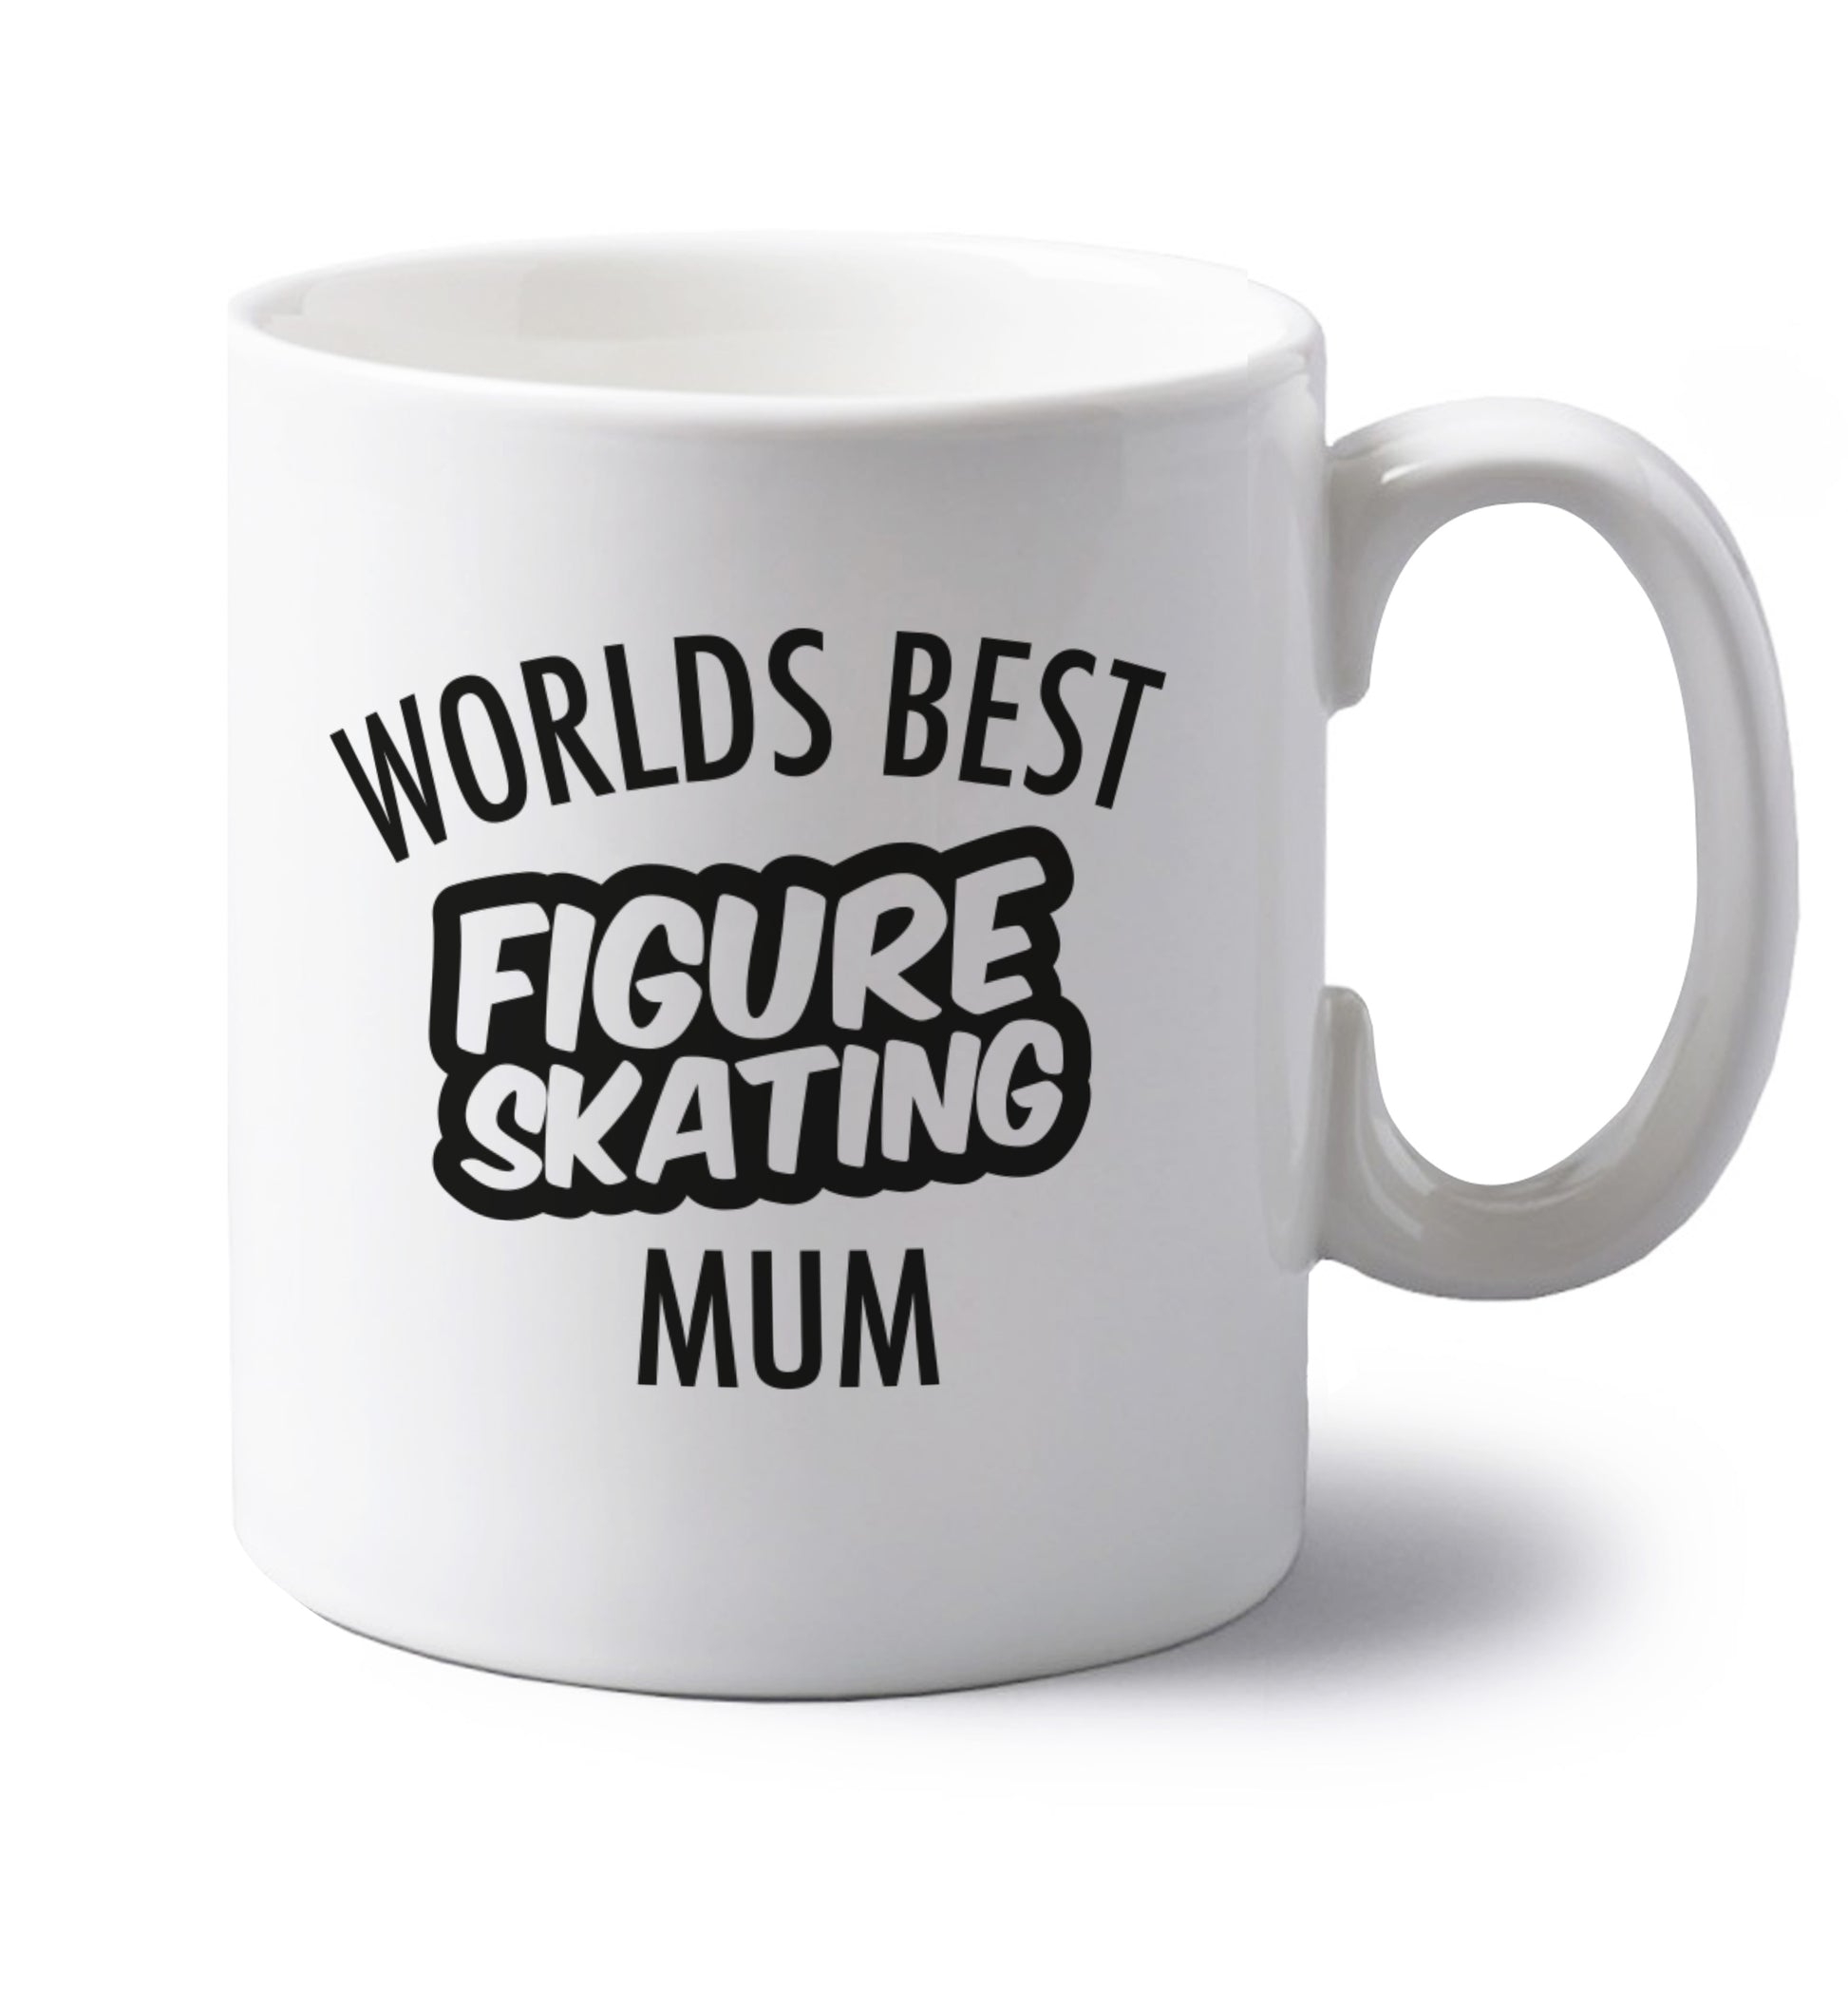 Worlds best figure skating mum left handed white ceramic mug 